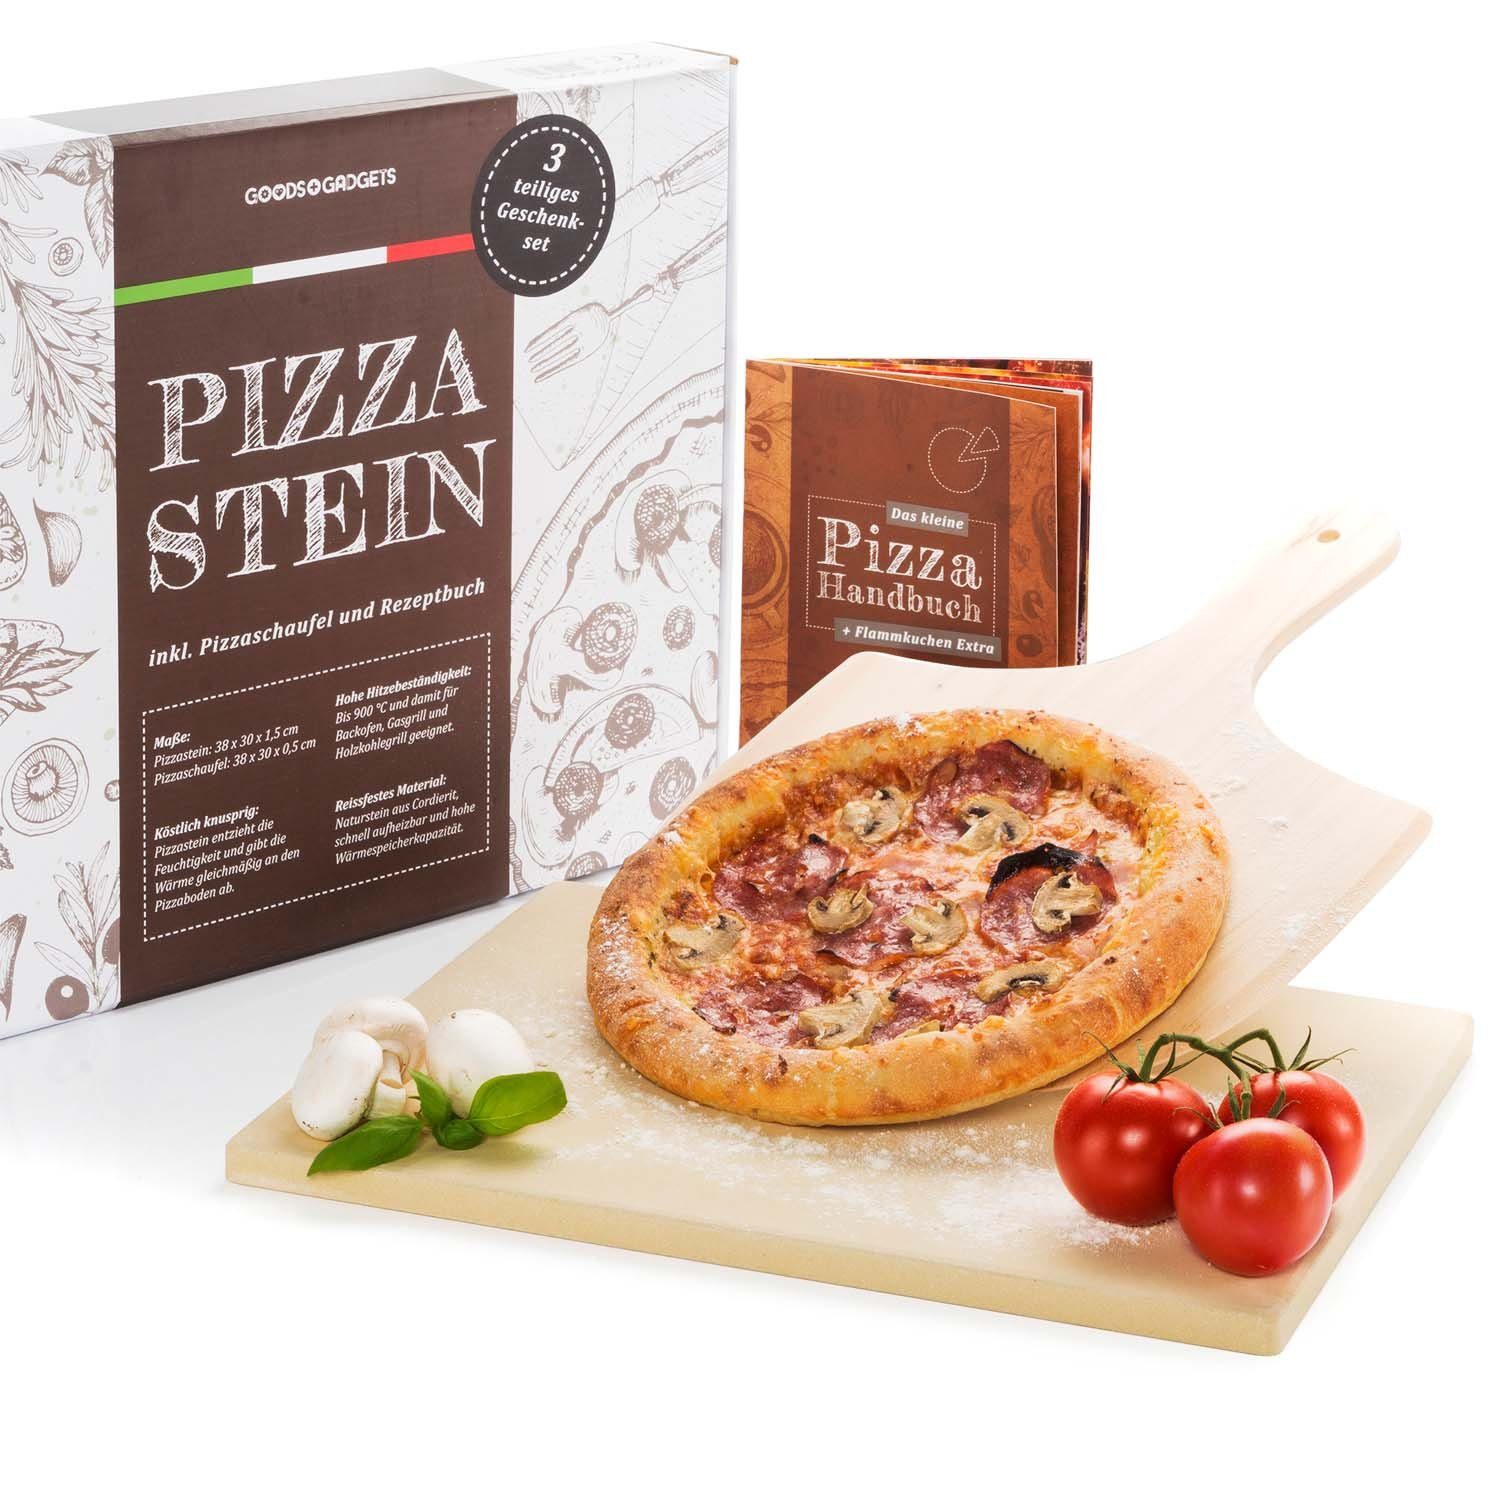 Dimono Pizzastein Backstein Brotbackstein, (Pizzaofen Set, Pizzaschieber & Rezeptbuch), temperaturbeständig bis 900°C